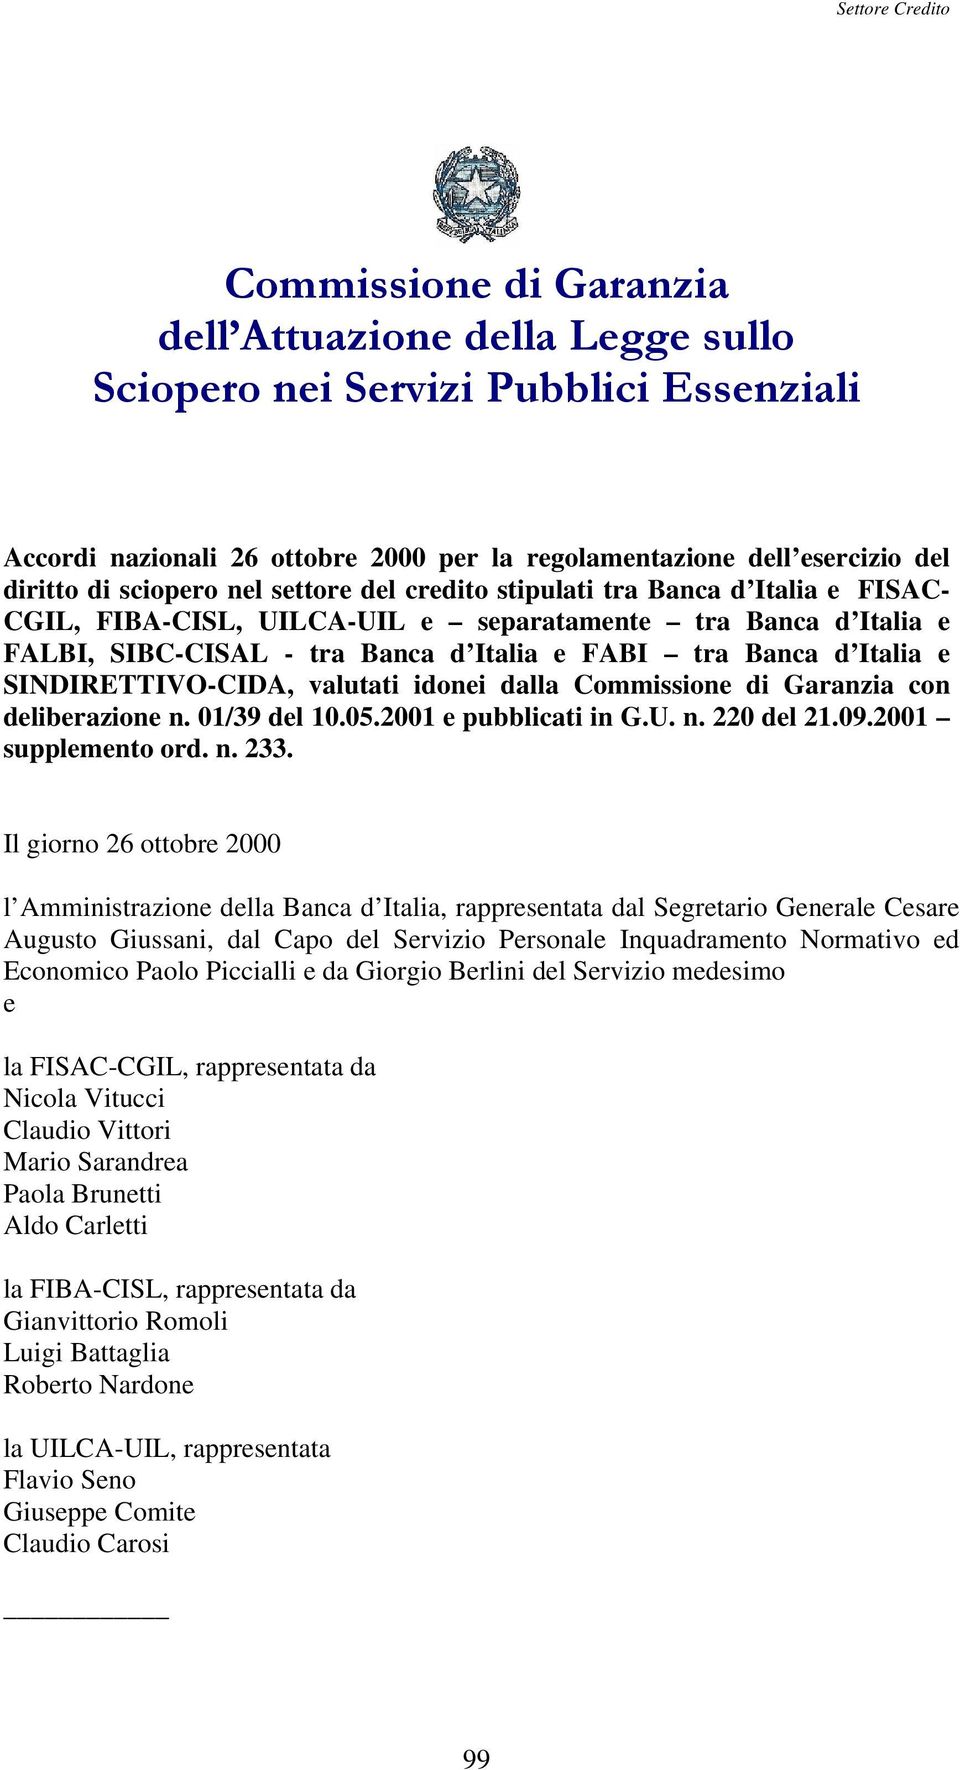 SINDIRETTIVO-CIDA, valutati idonei dalla Commissione di Garanzia con deliberazione n. 01/39 del 10.05.2001 e pubblicati in G.U. n. 220 del 21.09.2001 supplemento ord. n. 233.